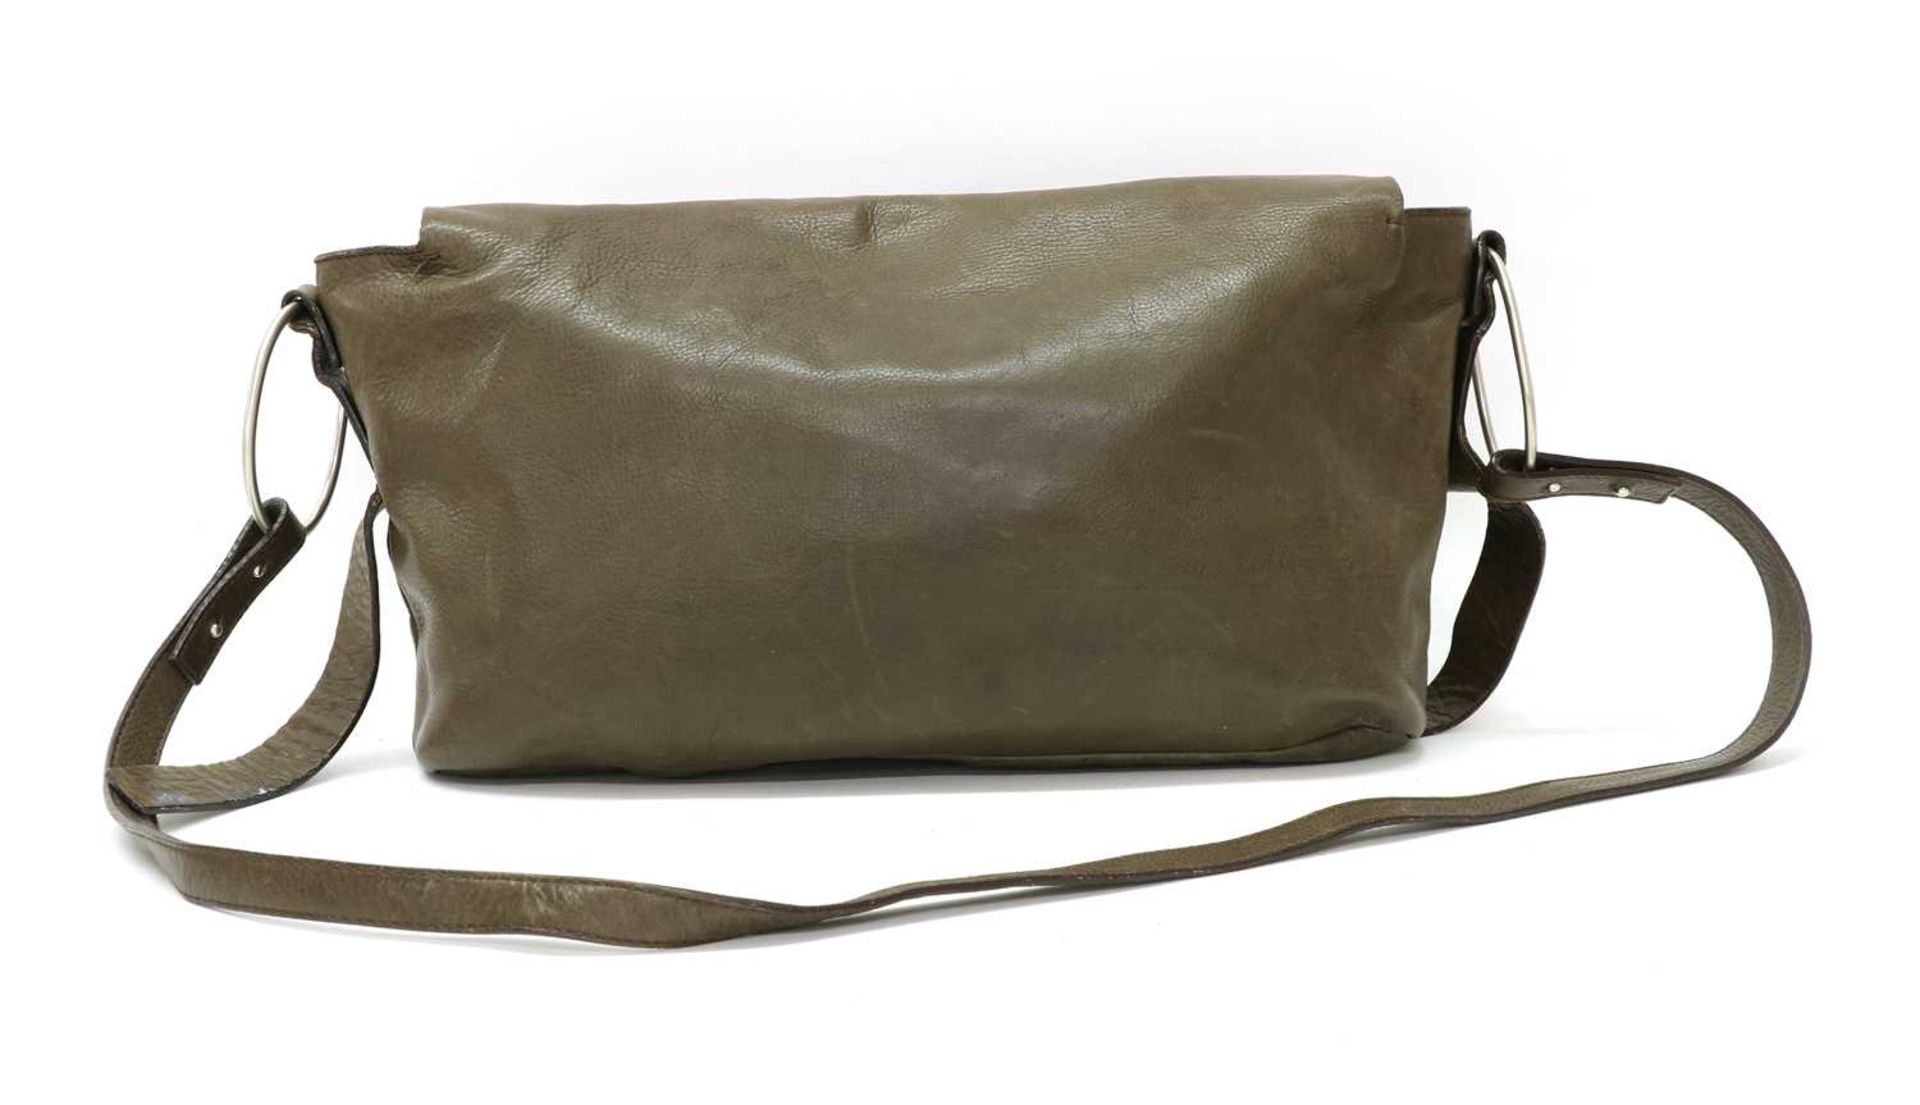 A Sonia Rykiel brown satchel bag, - Image 2 of 2